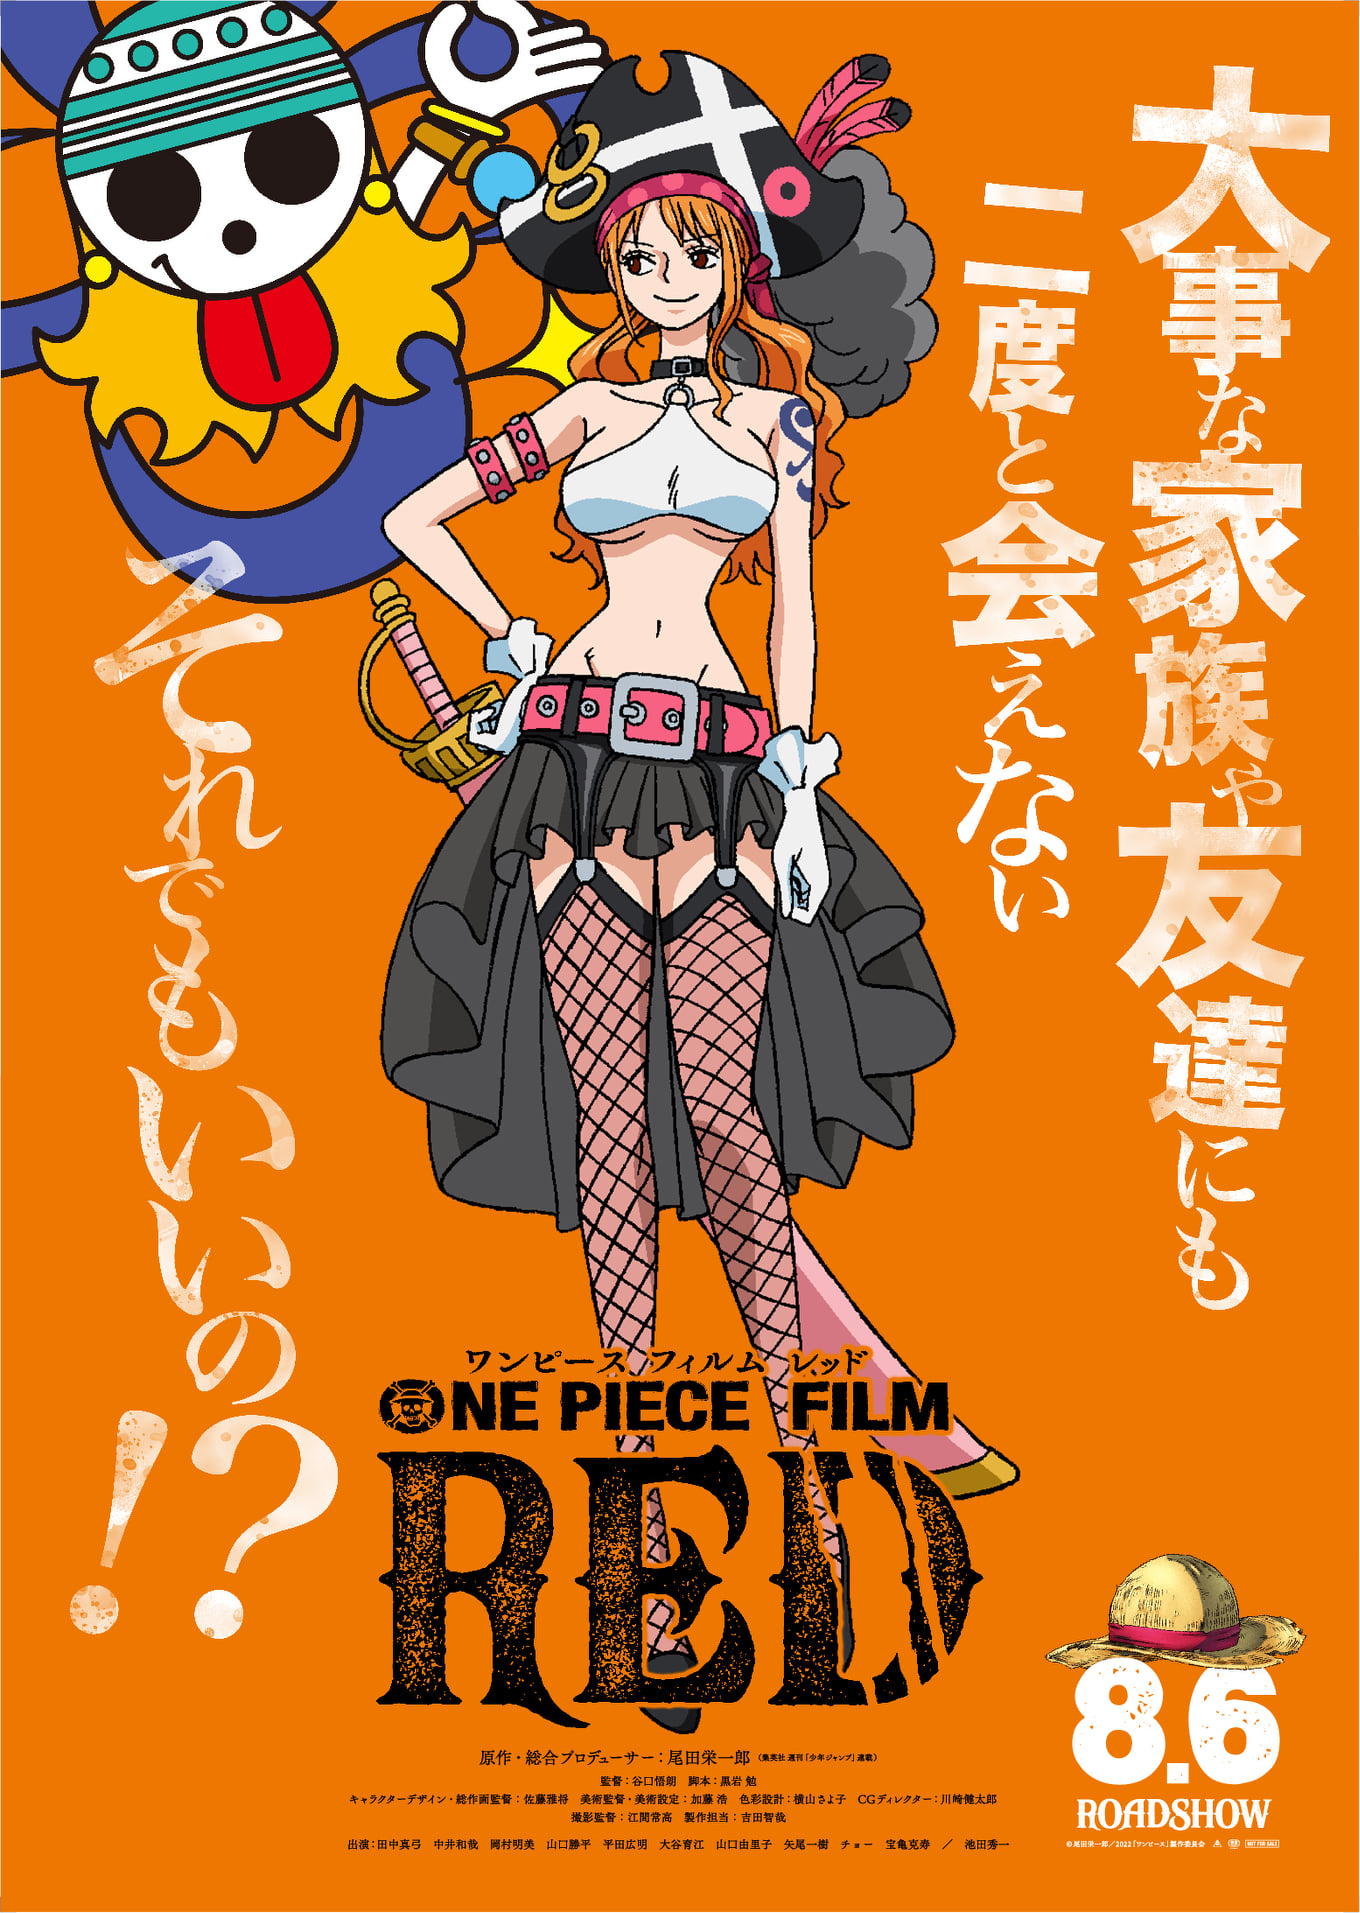 Băng Mũ Rơm: Nếu bạn là fan anime One Piece, một trong những băng hải tặc được yêu thích nhất, Băng Mũ Rơm chắc chắn sẽ làm bạn thích thú với các hình ảnh liên quan. Khám phá thế giới của họ và cùng tham gia phiêu lưu trên biển cùng các thành viên của băng hải tặc này.